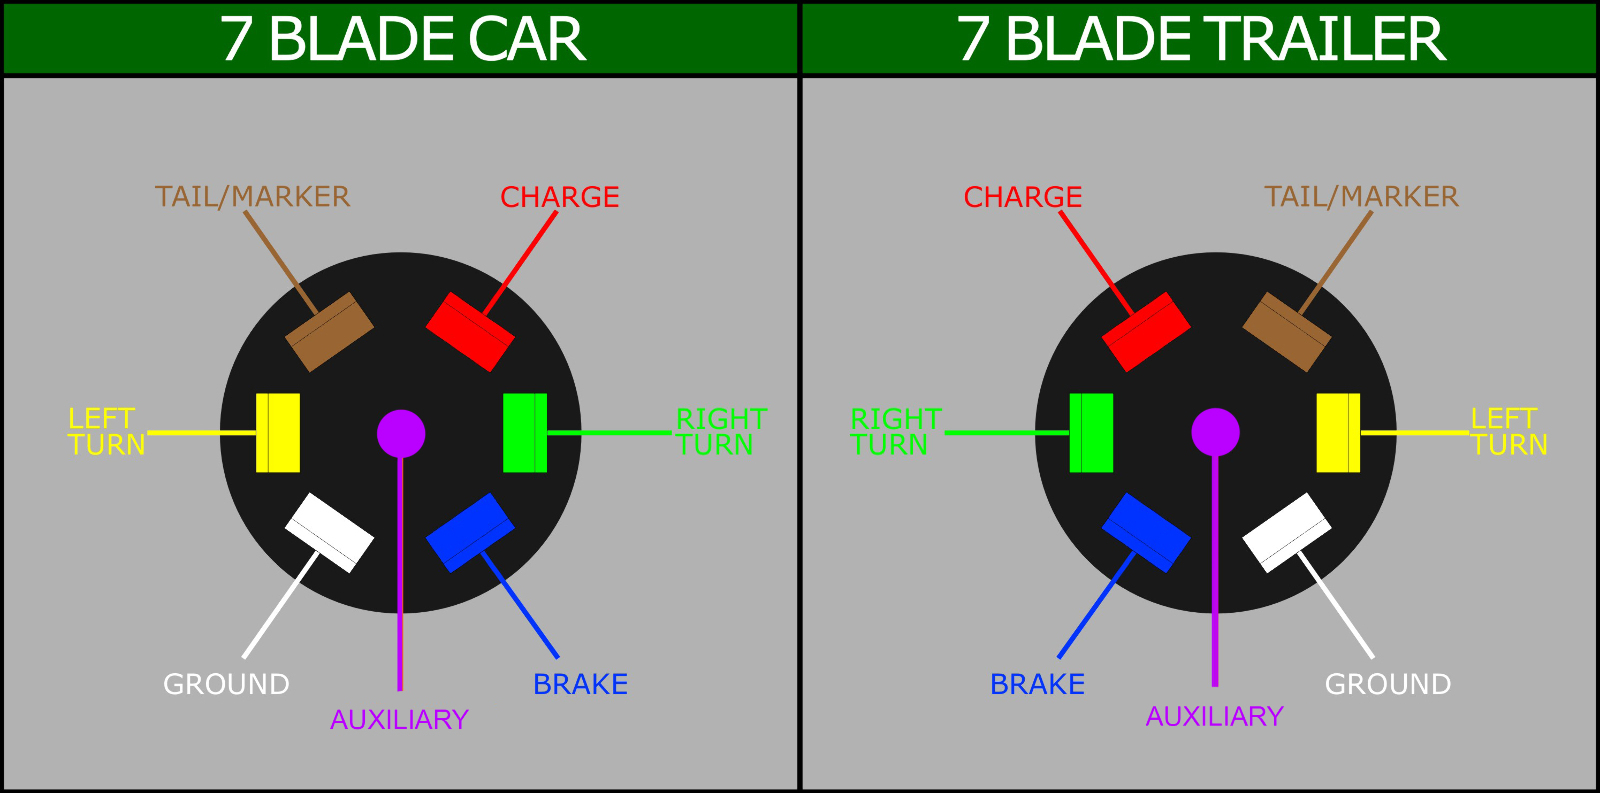 6 Pin Trailer Plug Wiring - Data Wiring Diagram Today - 7 Blade Wiring Diagram